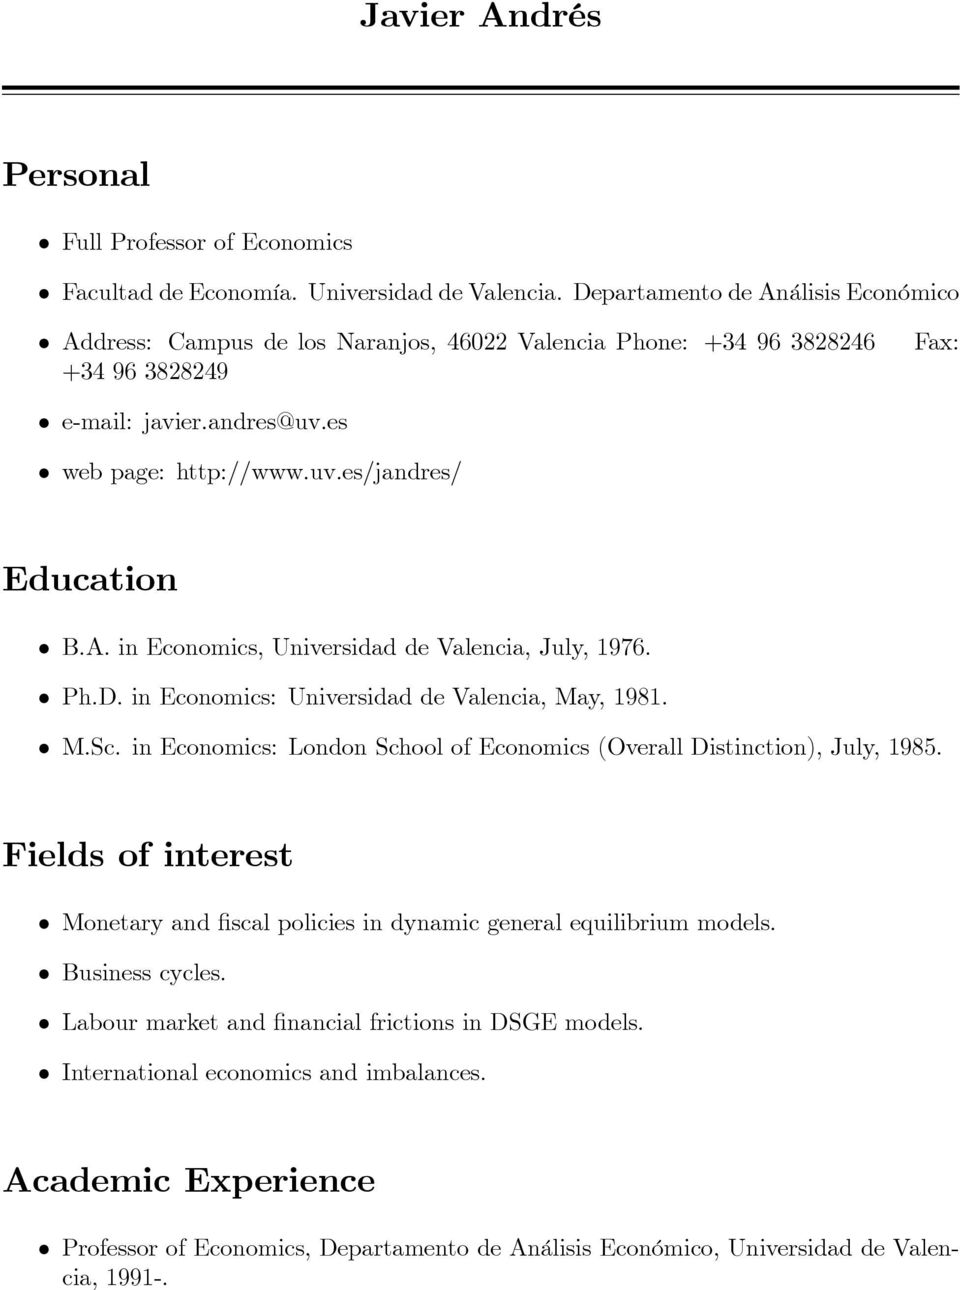 A. in Economics, Universidad de Valencia, July, 1976. Ph.D. in Economics: Universidad de Valencia, May, 1981. M.Sc. in Economics: London School of Economics (Overall Distinction), July, 1985.